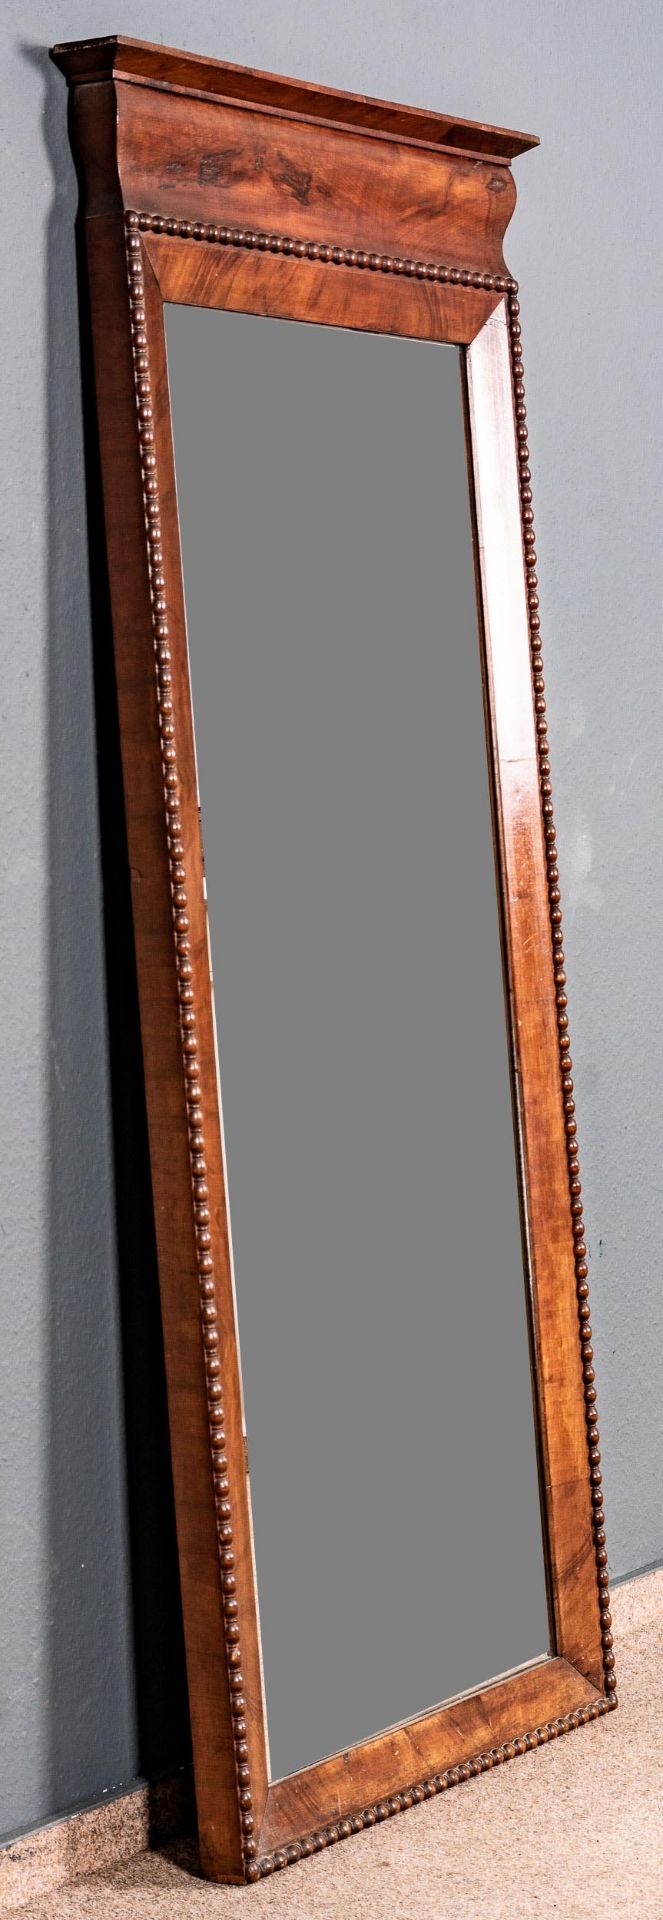 Schlichter antiker Spiegel, hochrechteckige Grundform, Nussbaum, deutsch um 1850/60, guter, gebrauc - Bild 3 aus 4